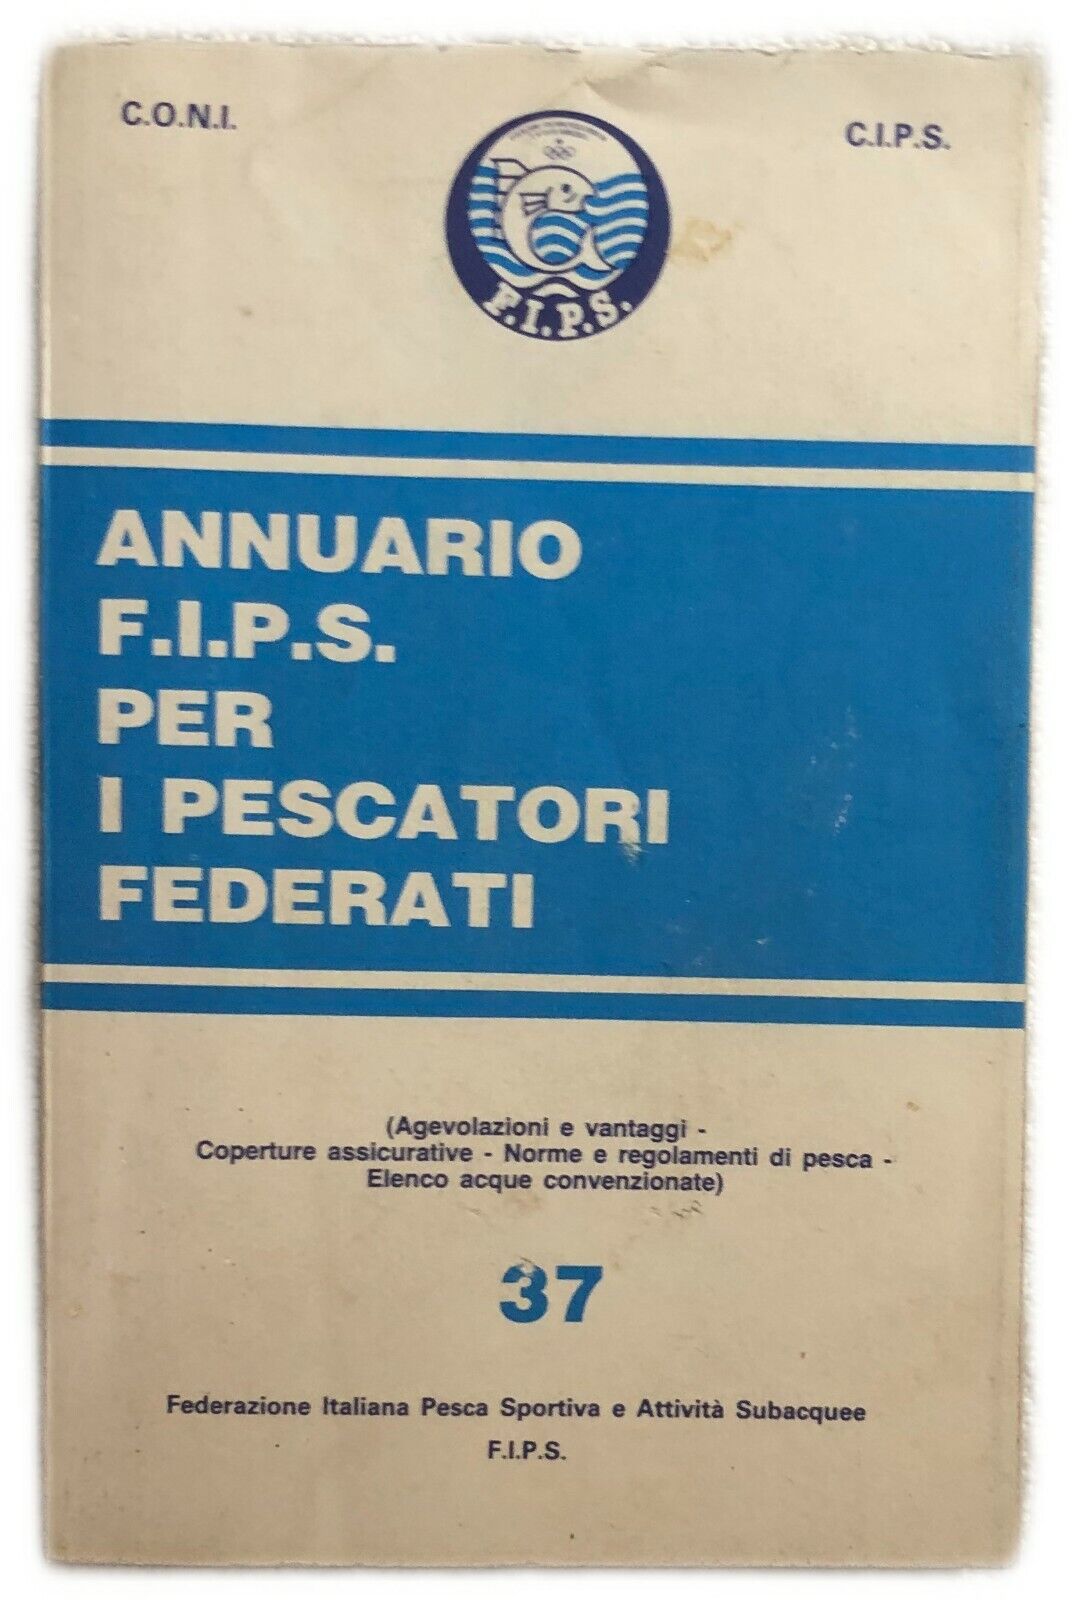 Annuario F.I.P.S. per i pescatori federati n. 37 di Coni,  1990,  Fips